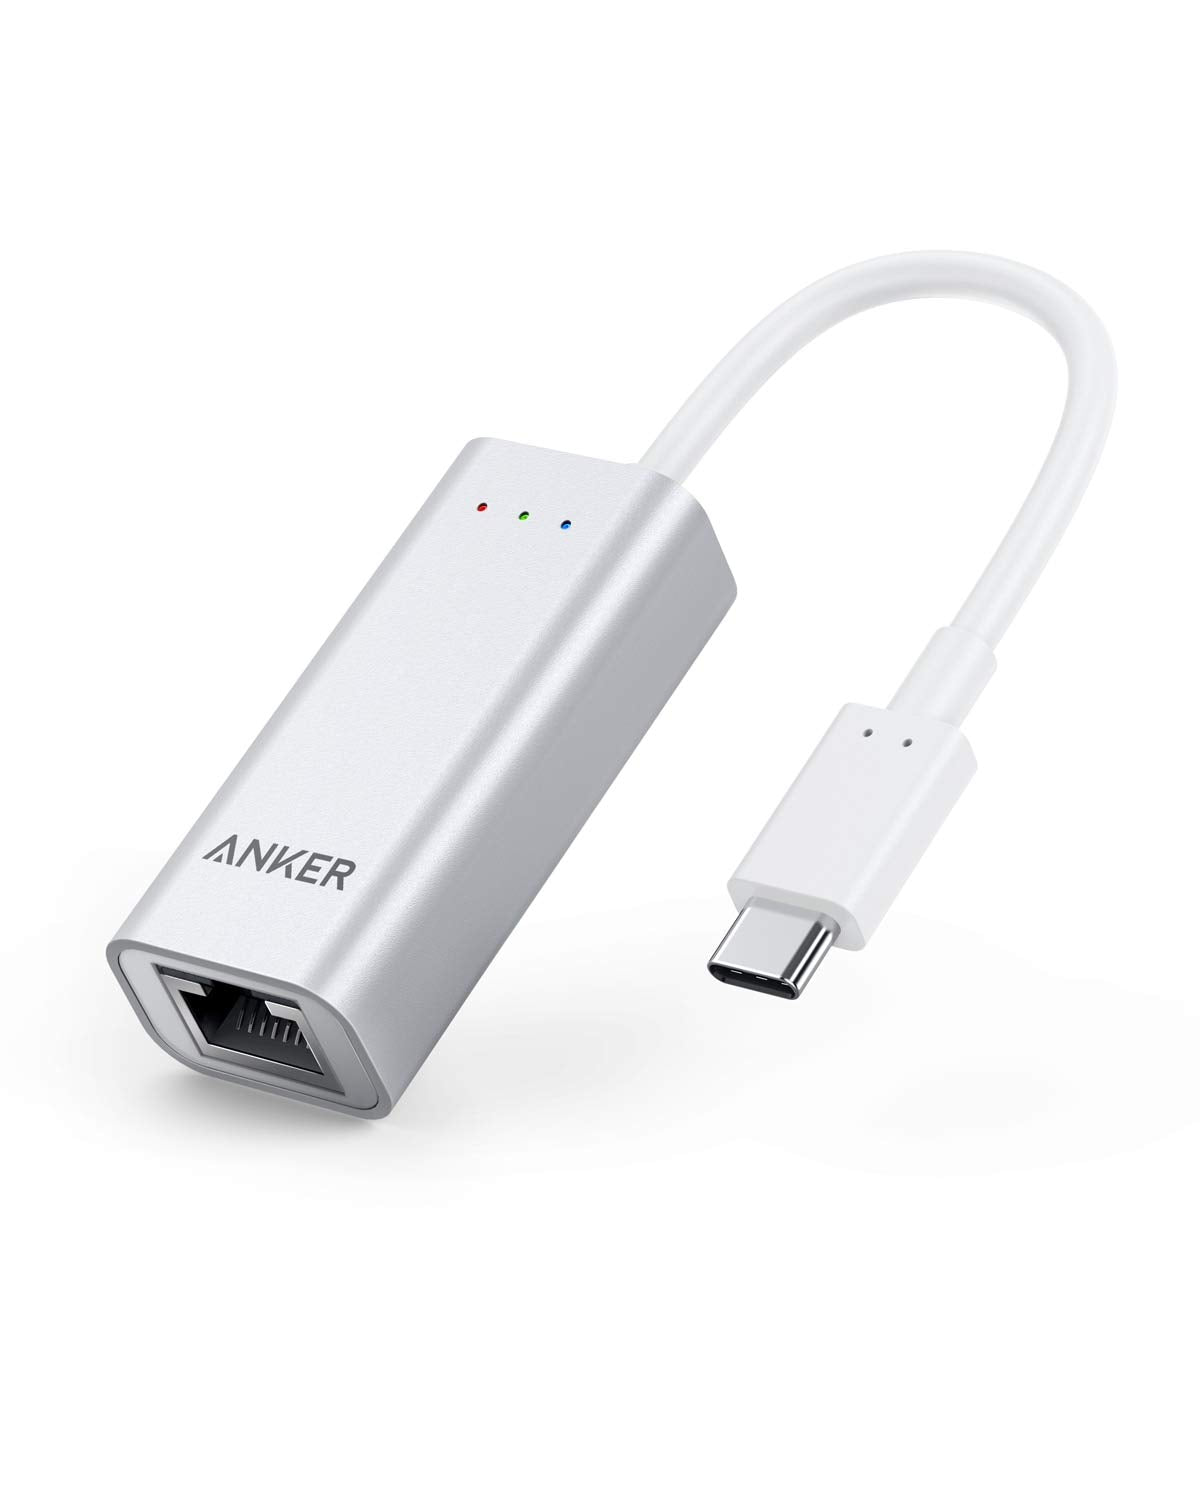 USB-C Gigabit Ethernet Adapter - Anker Europe